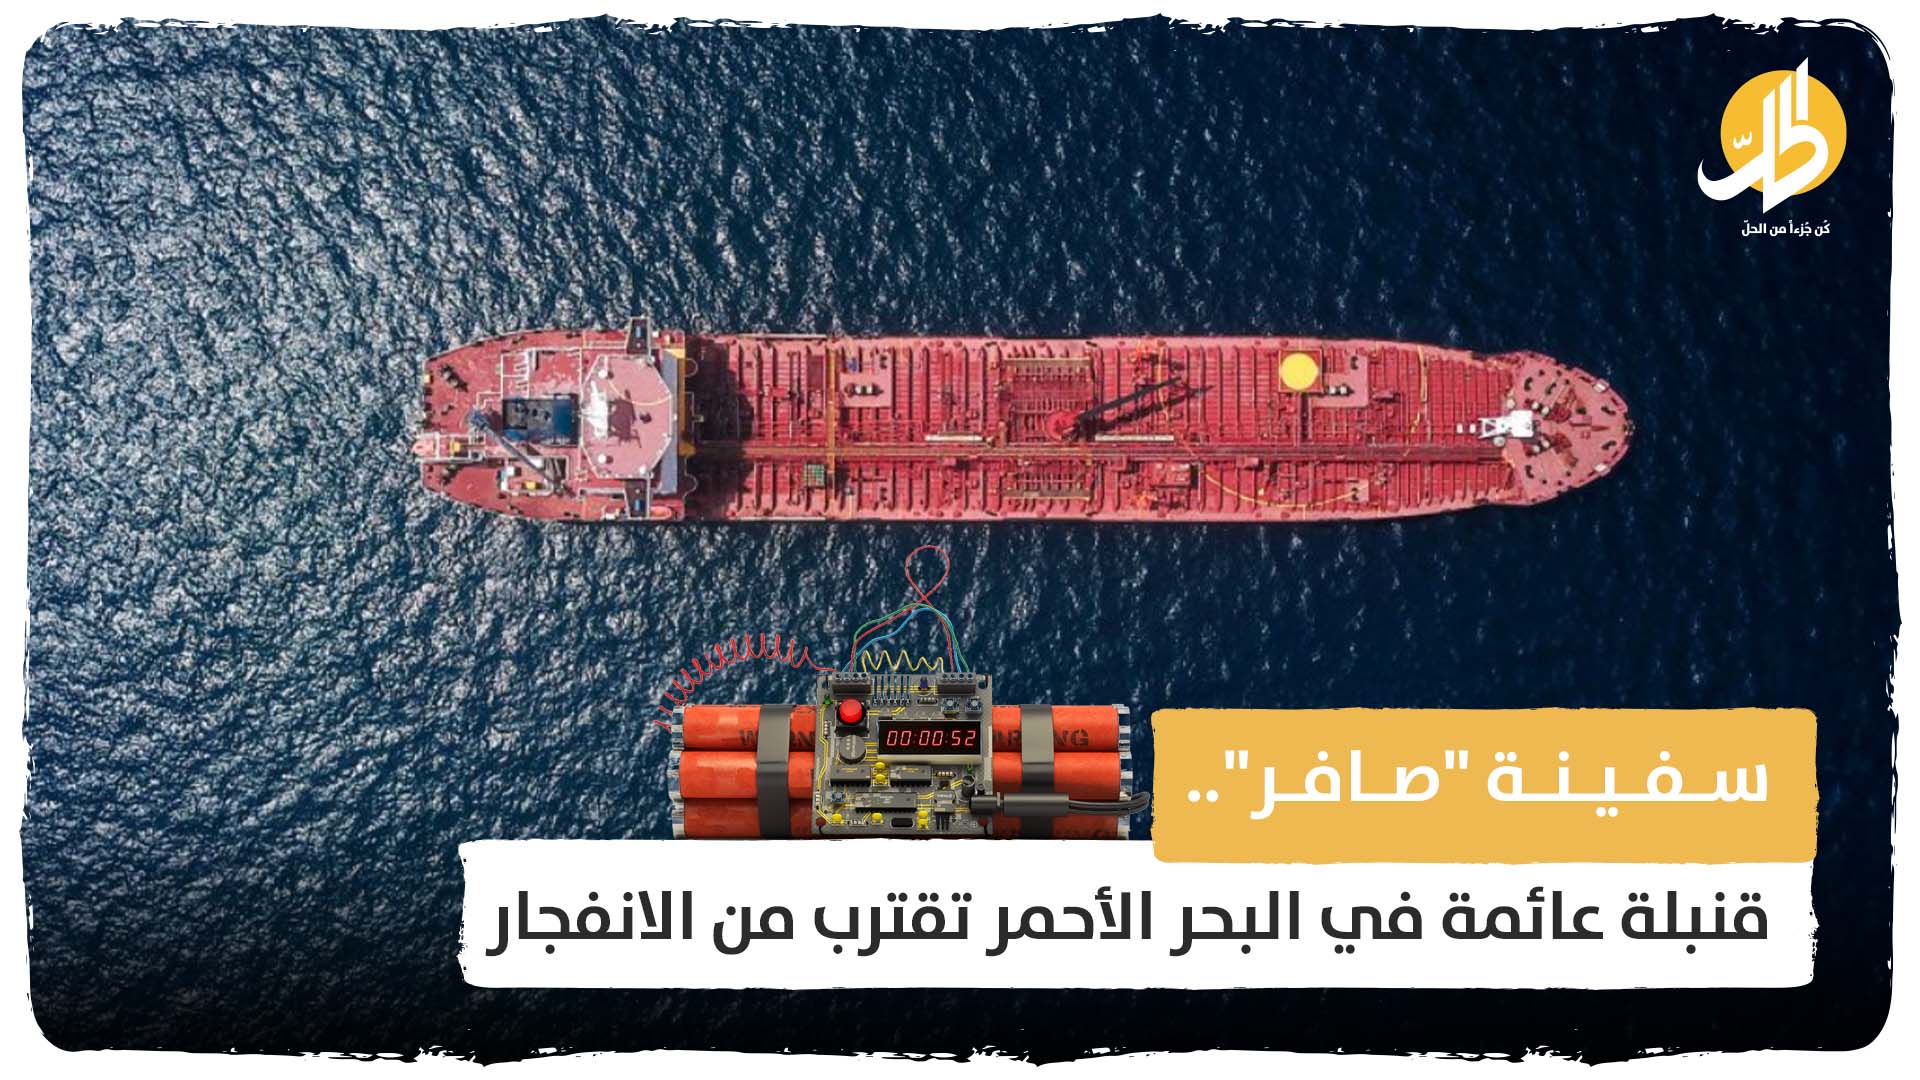 سفينة “صافر”.. قنبلة عائمة في البحر الأحمر تقترب من الانفجار